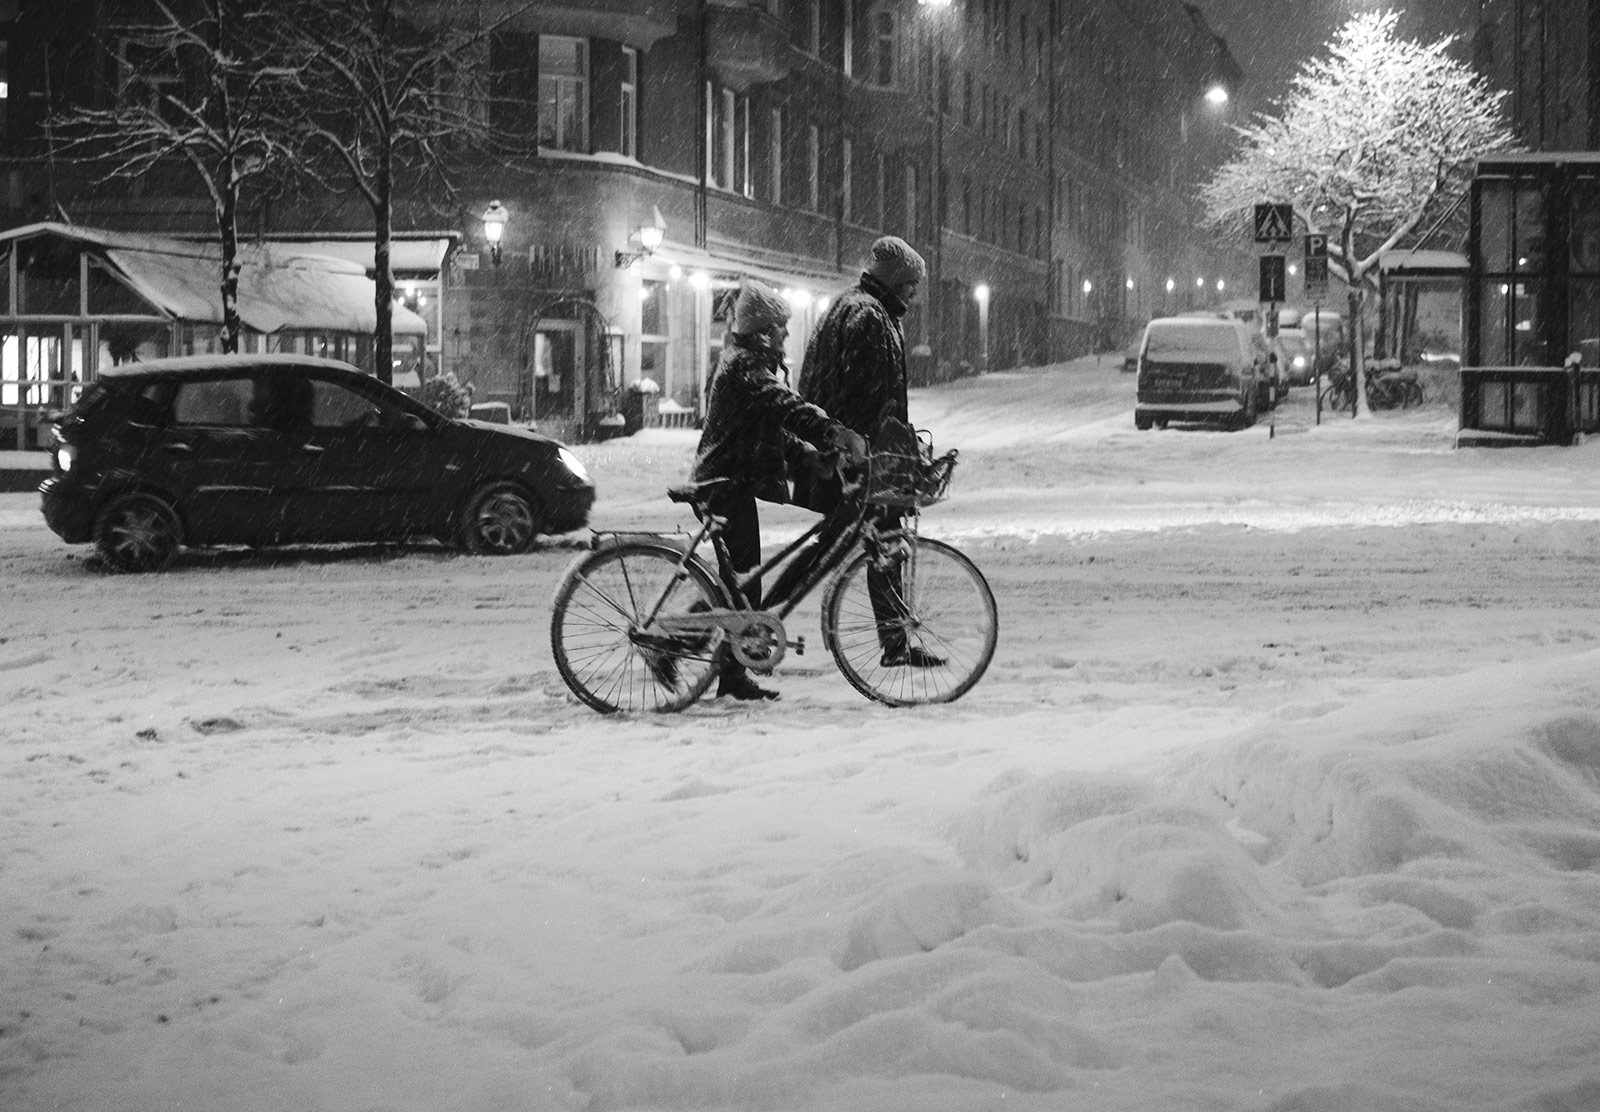 Woman pushing bike through snow